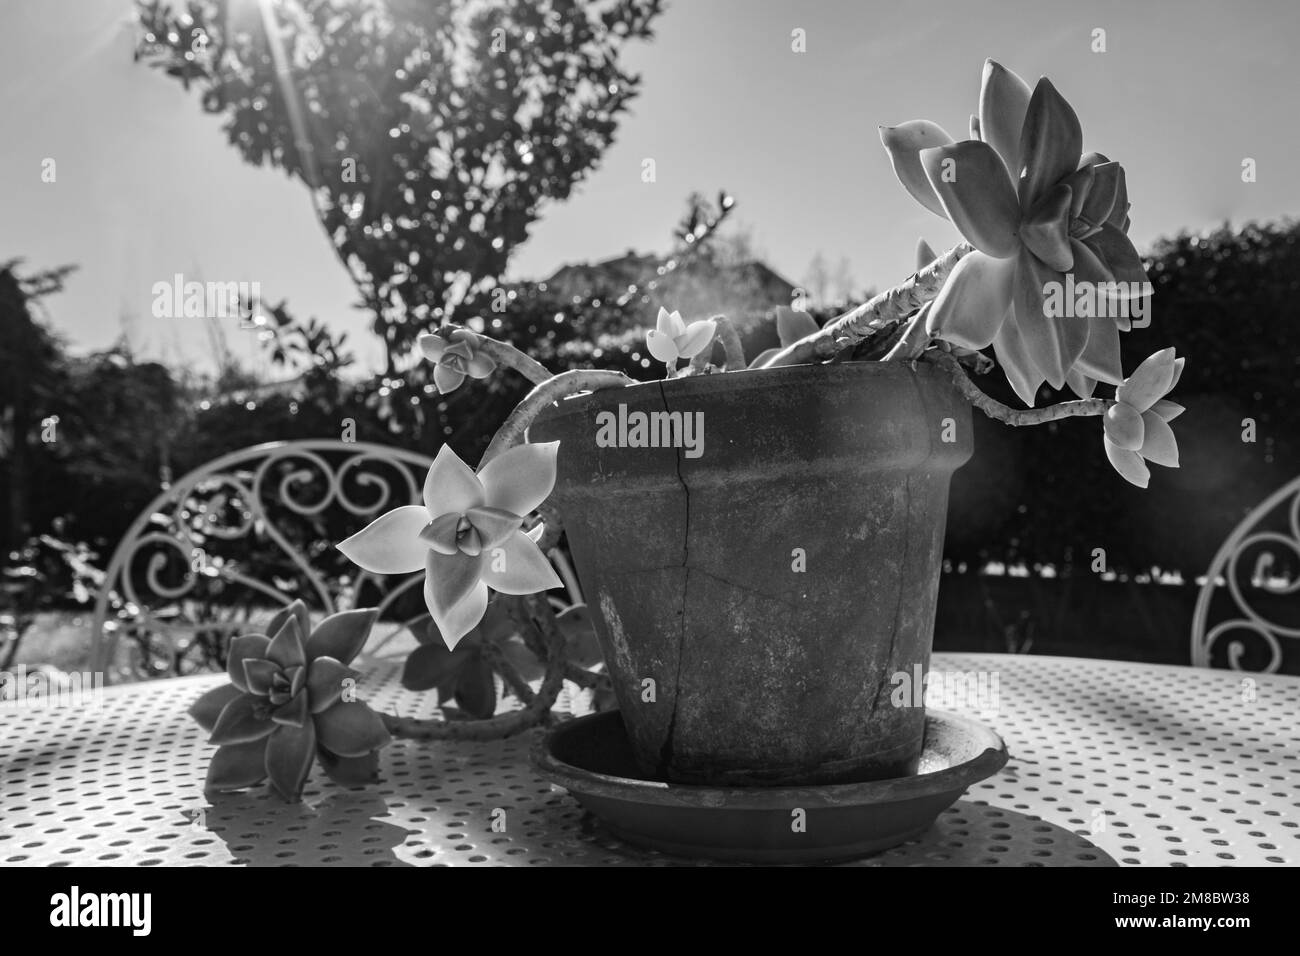 Un macro shot di un grappotetalum paraguayense catturato al sole d'inverno su un tavolo da giardino Foto Stock